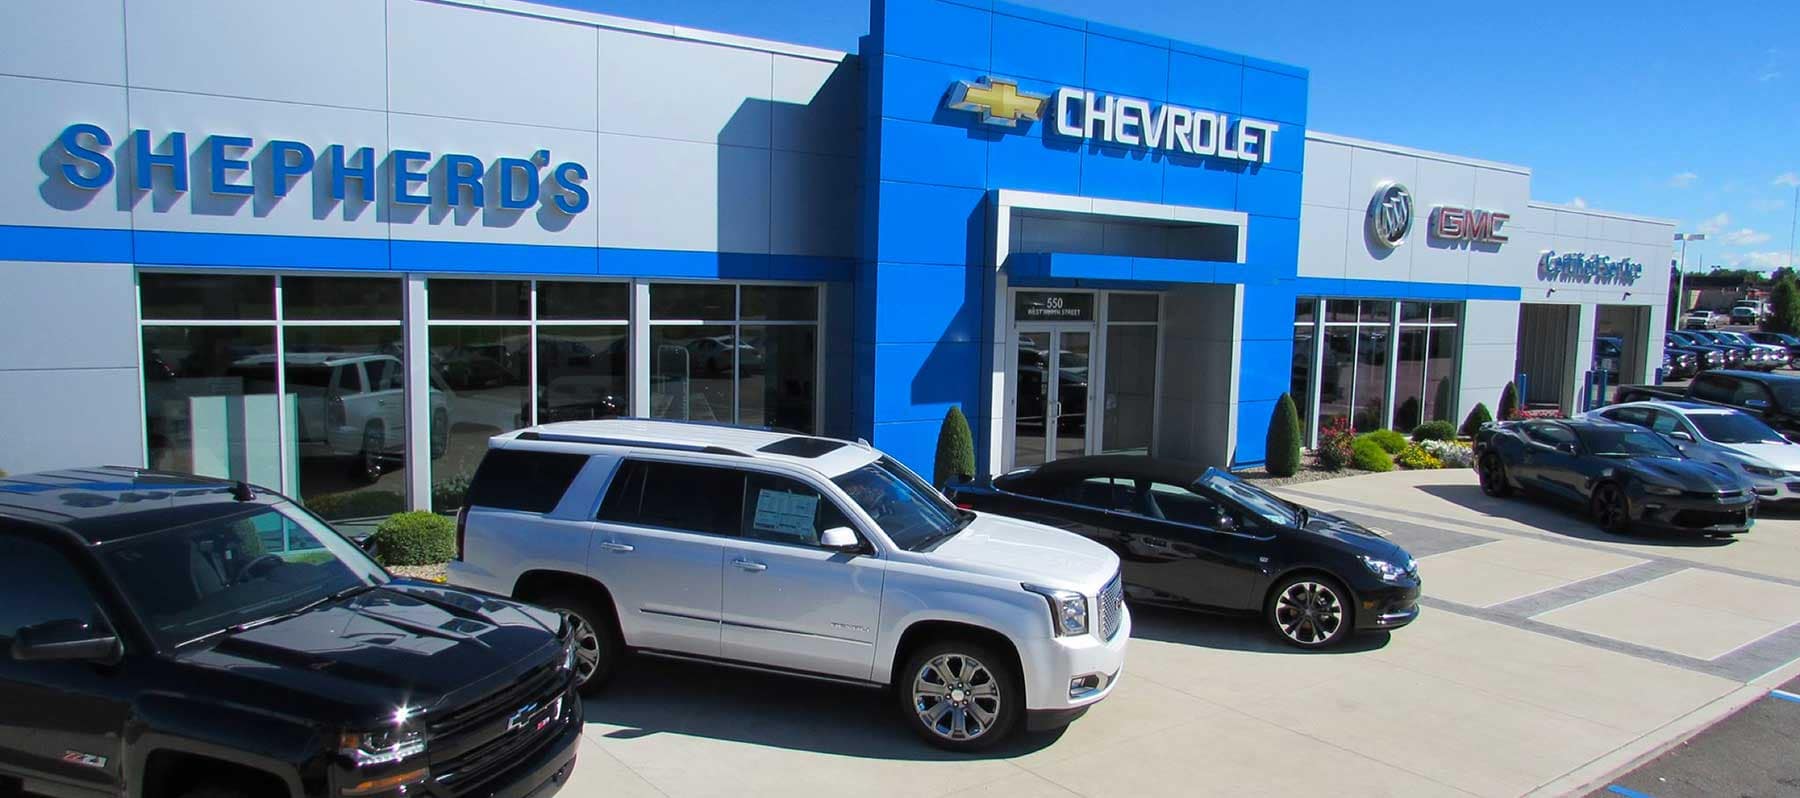 An exterior shot of a Chevrolet dealership